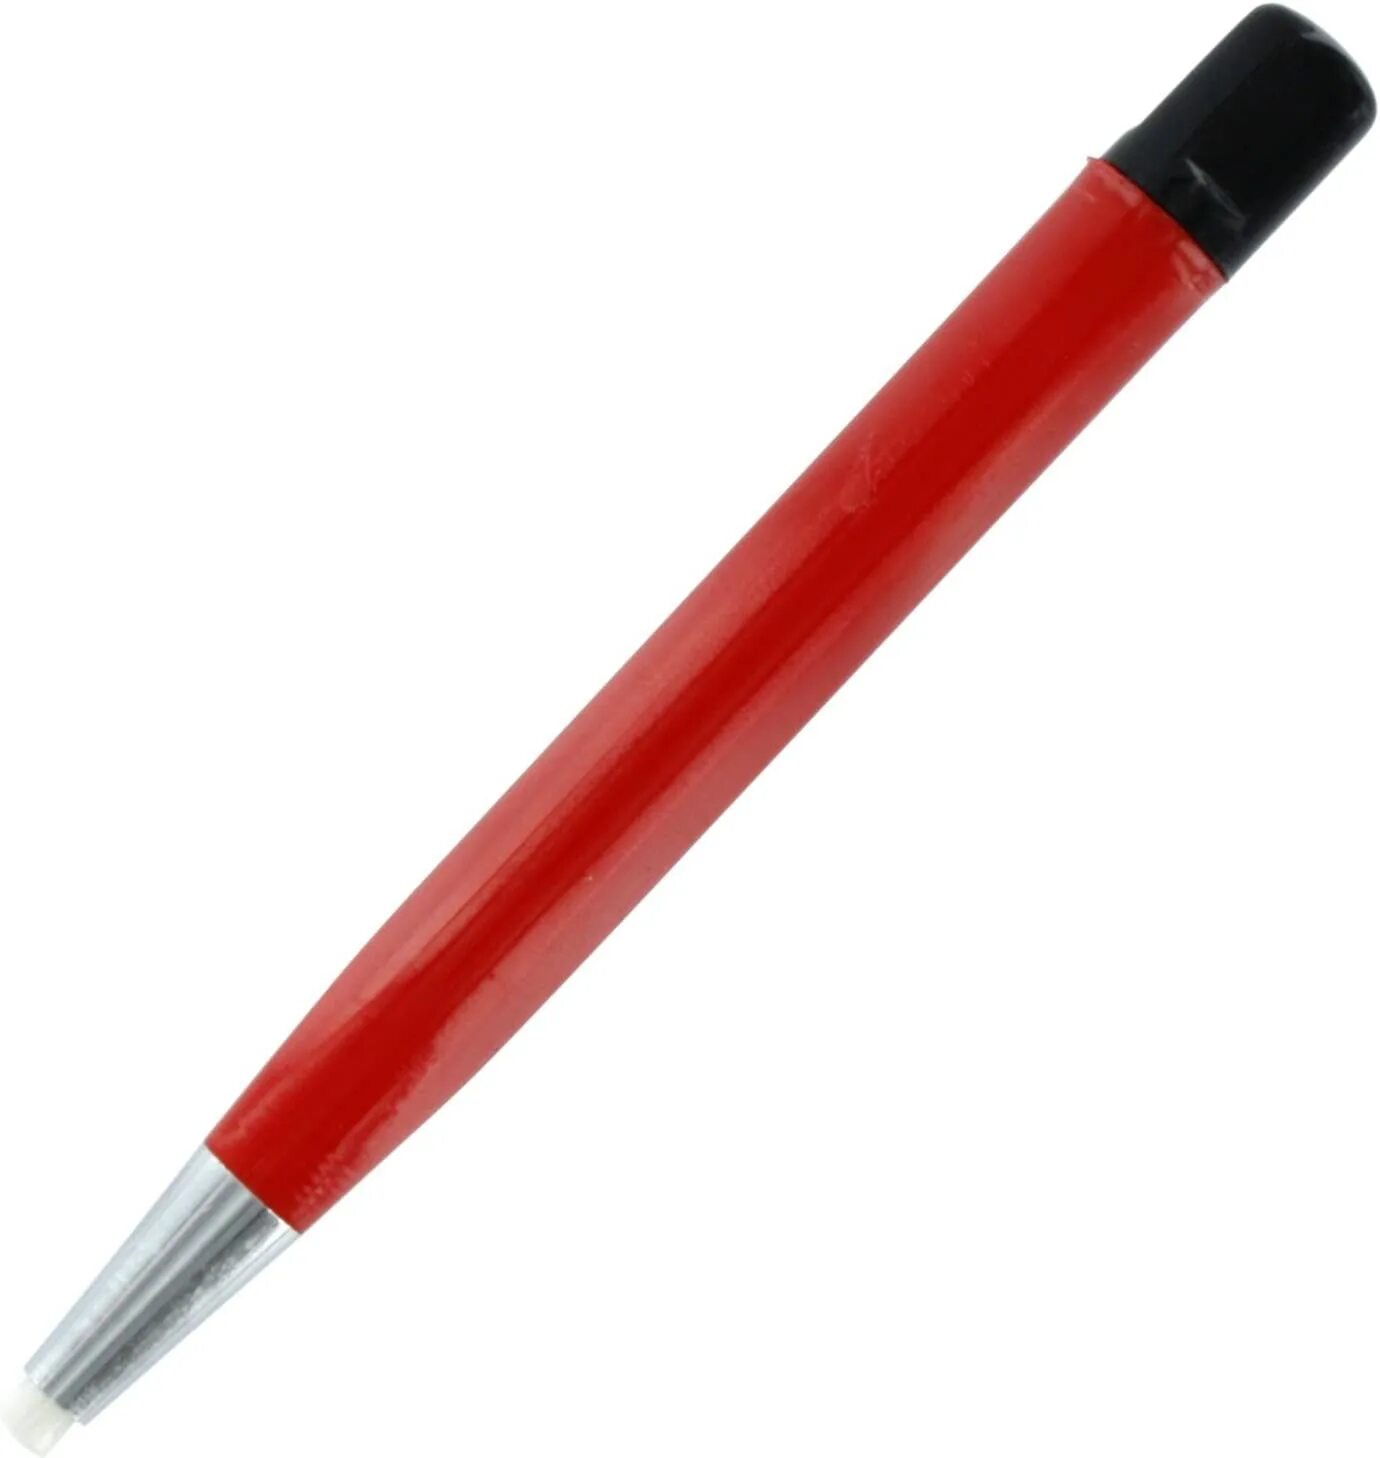 Карандаш для шлифовального круга. Абразивный карандаш. Карандаш для стекла. Fiberglass Pen. Карандаш для стекла 50шт.